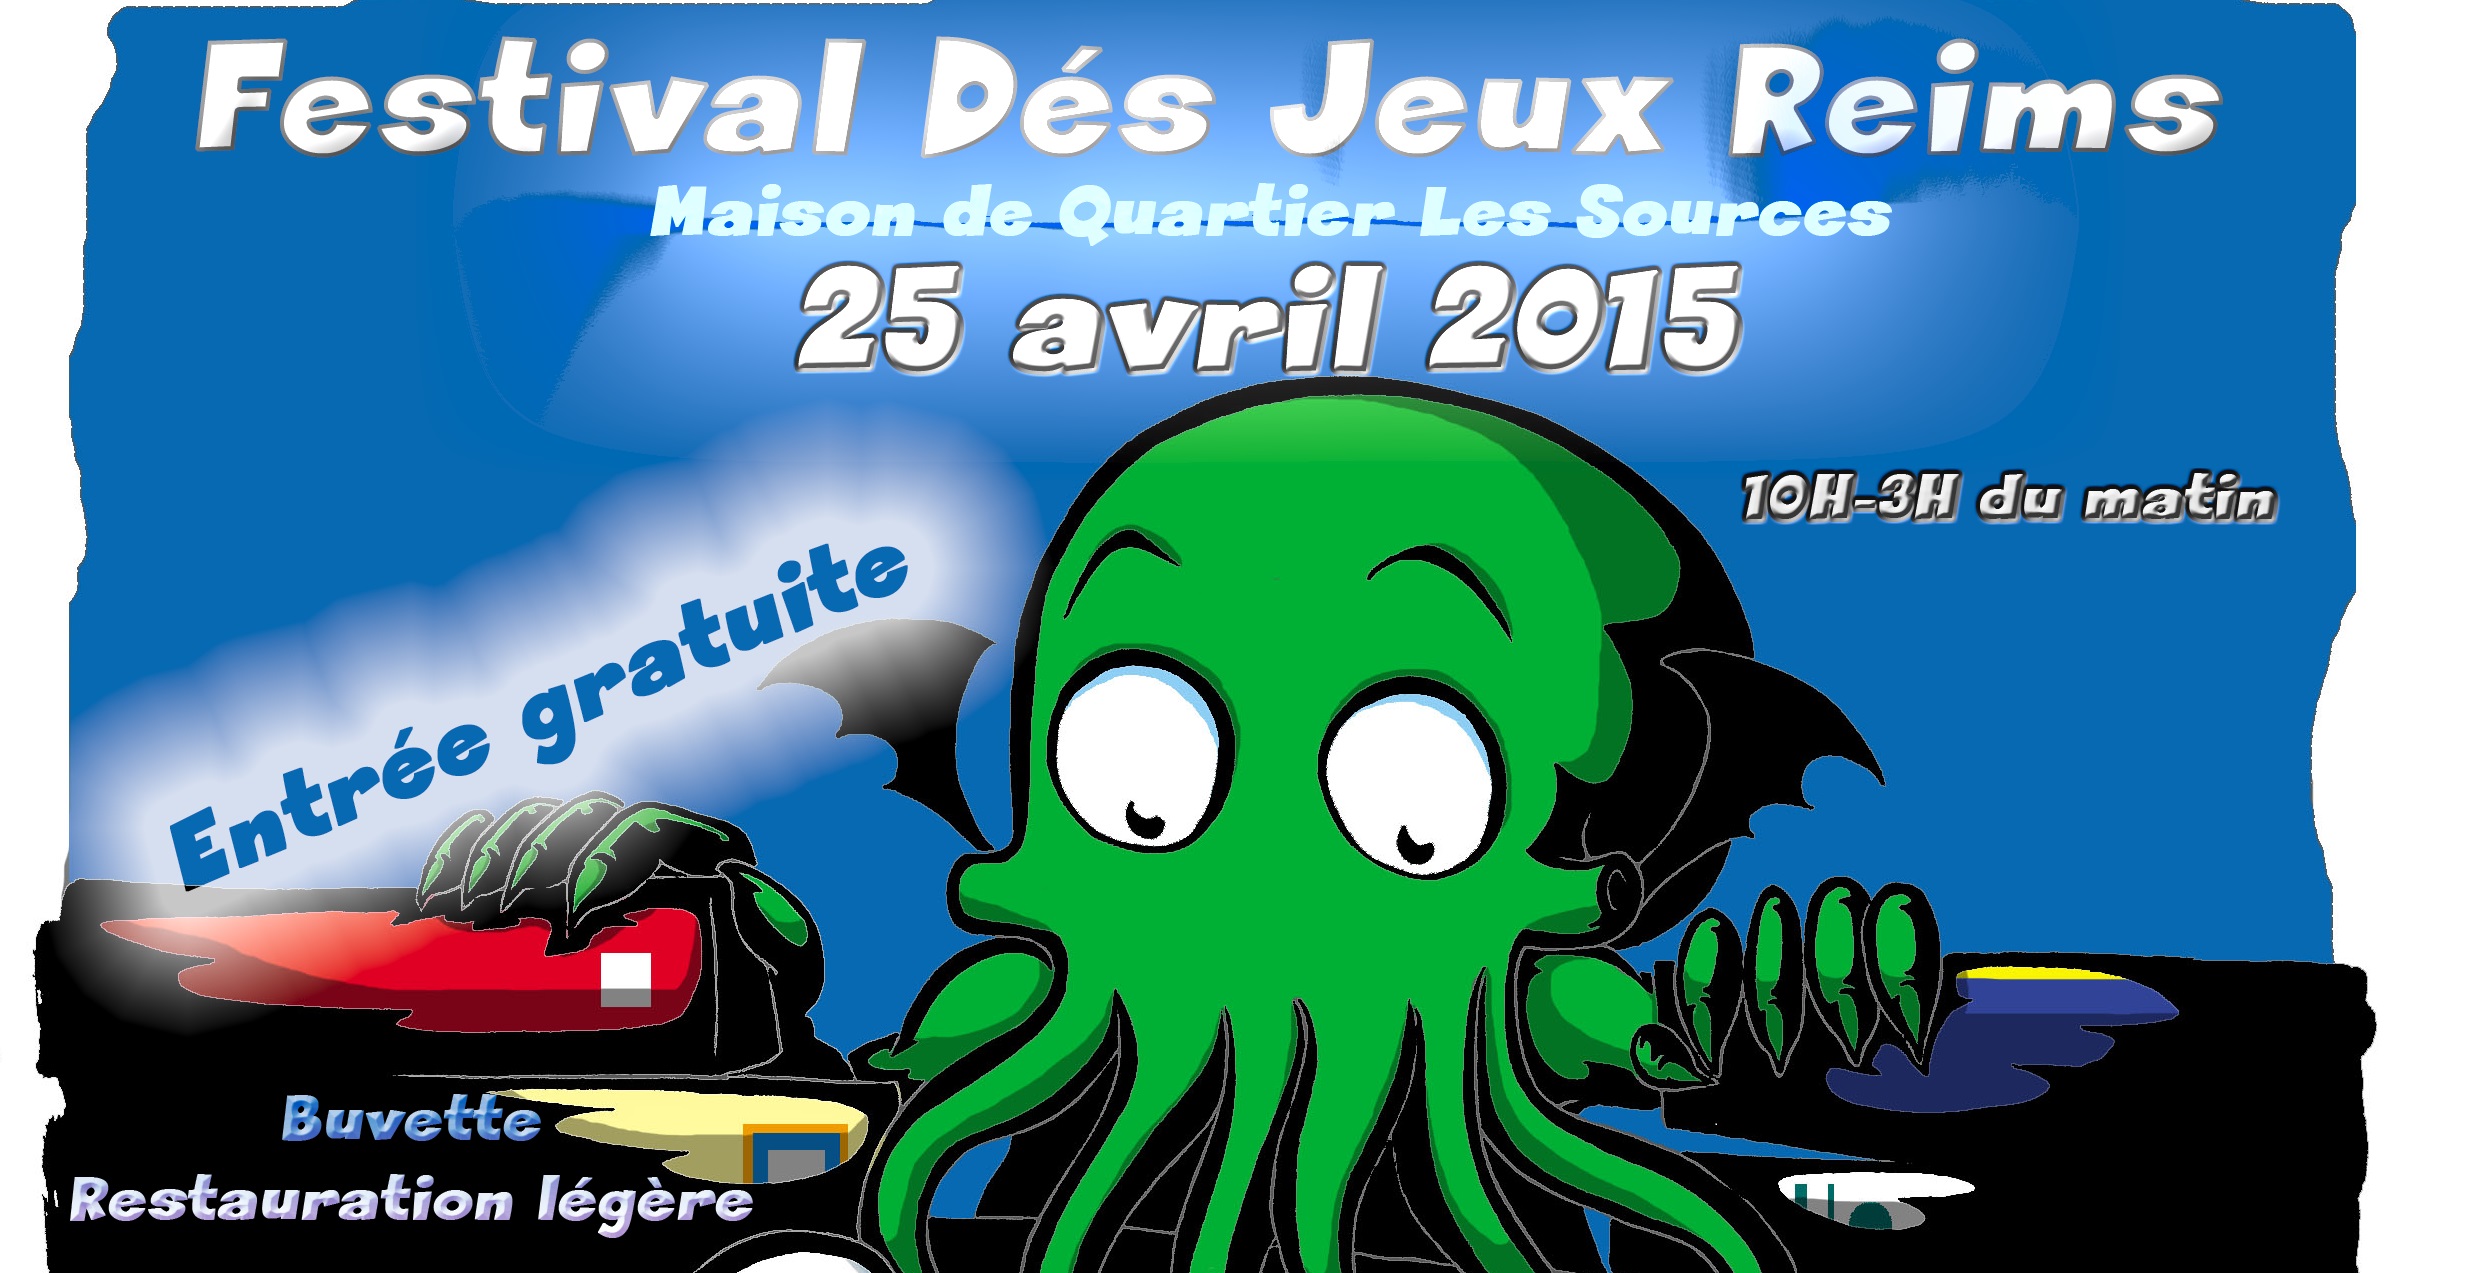 Festival Dés Jeux Reims Le 25 Avril !